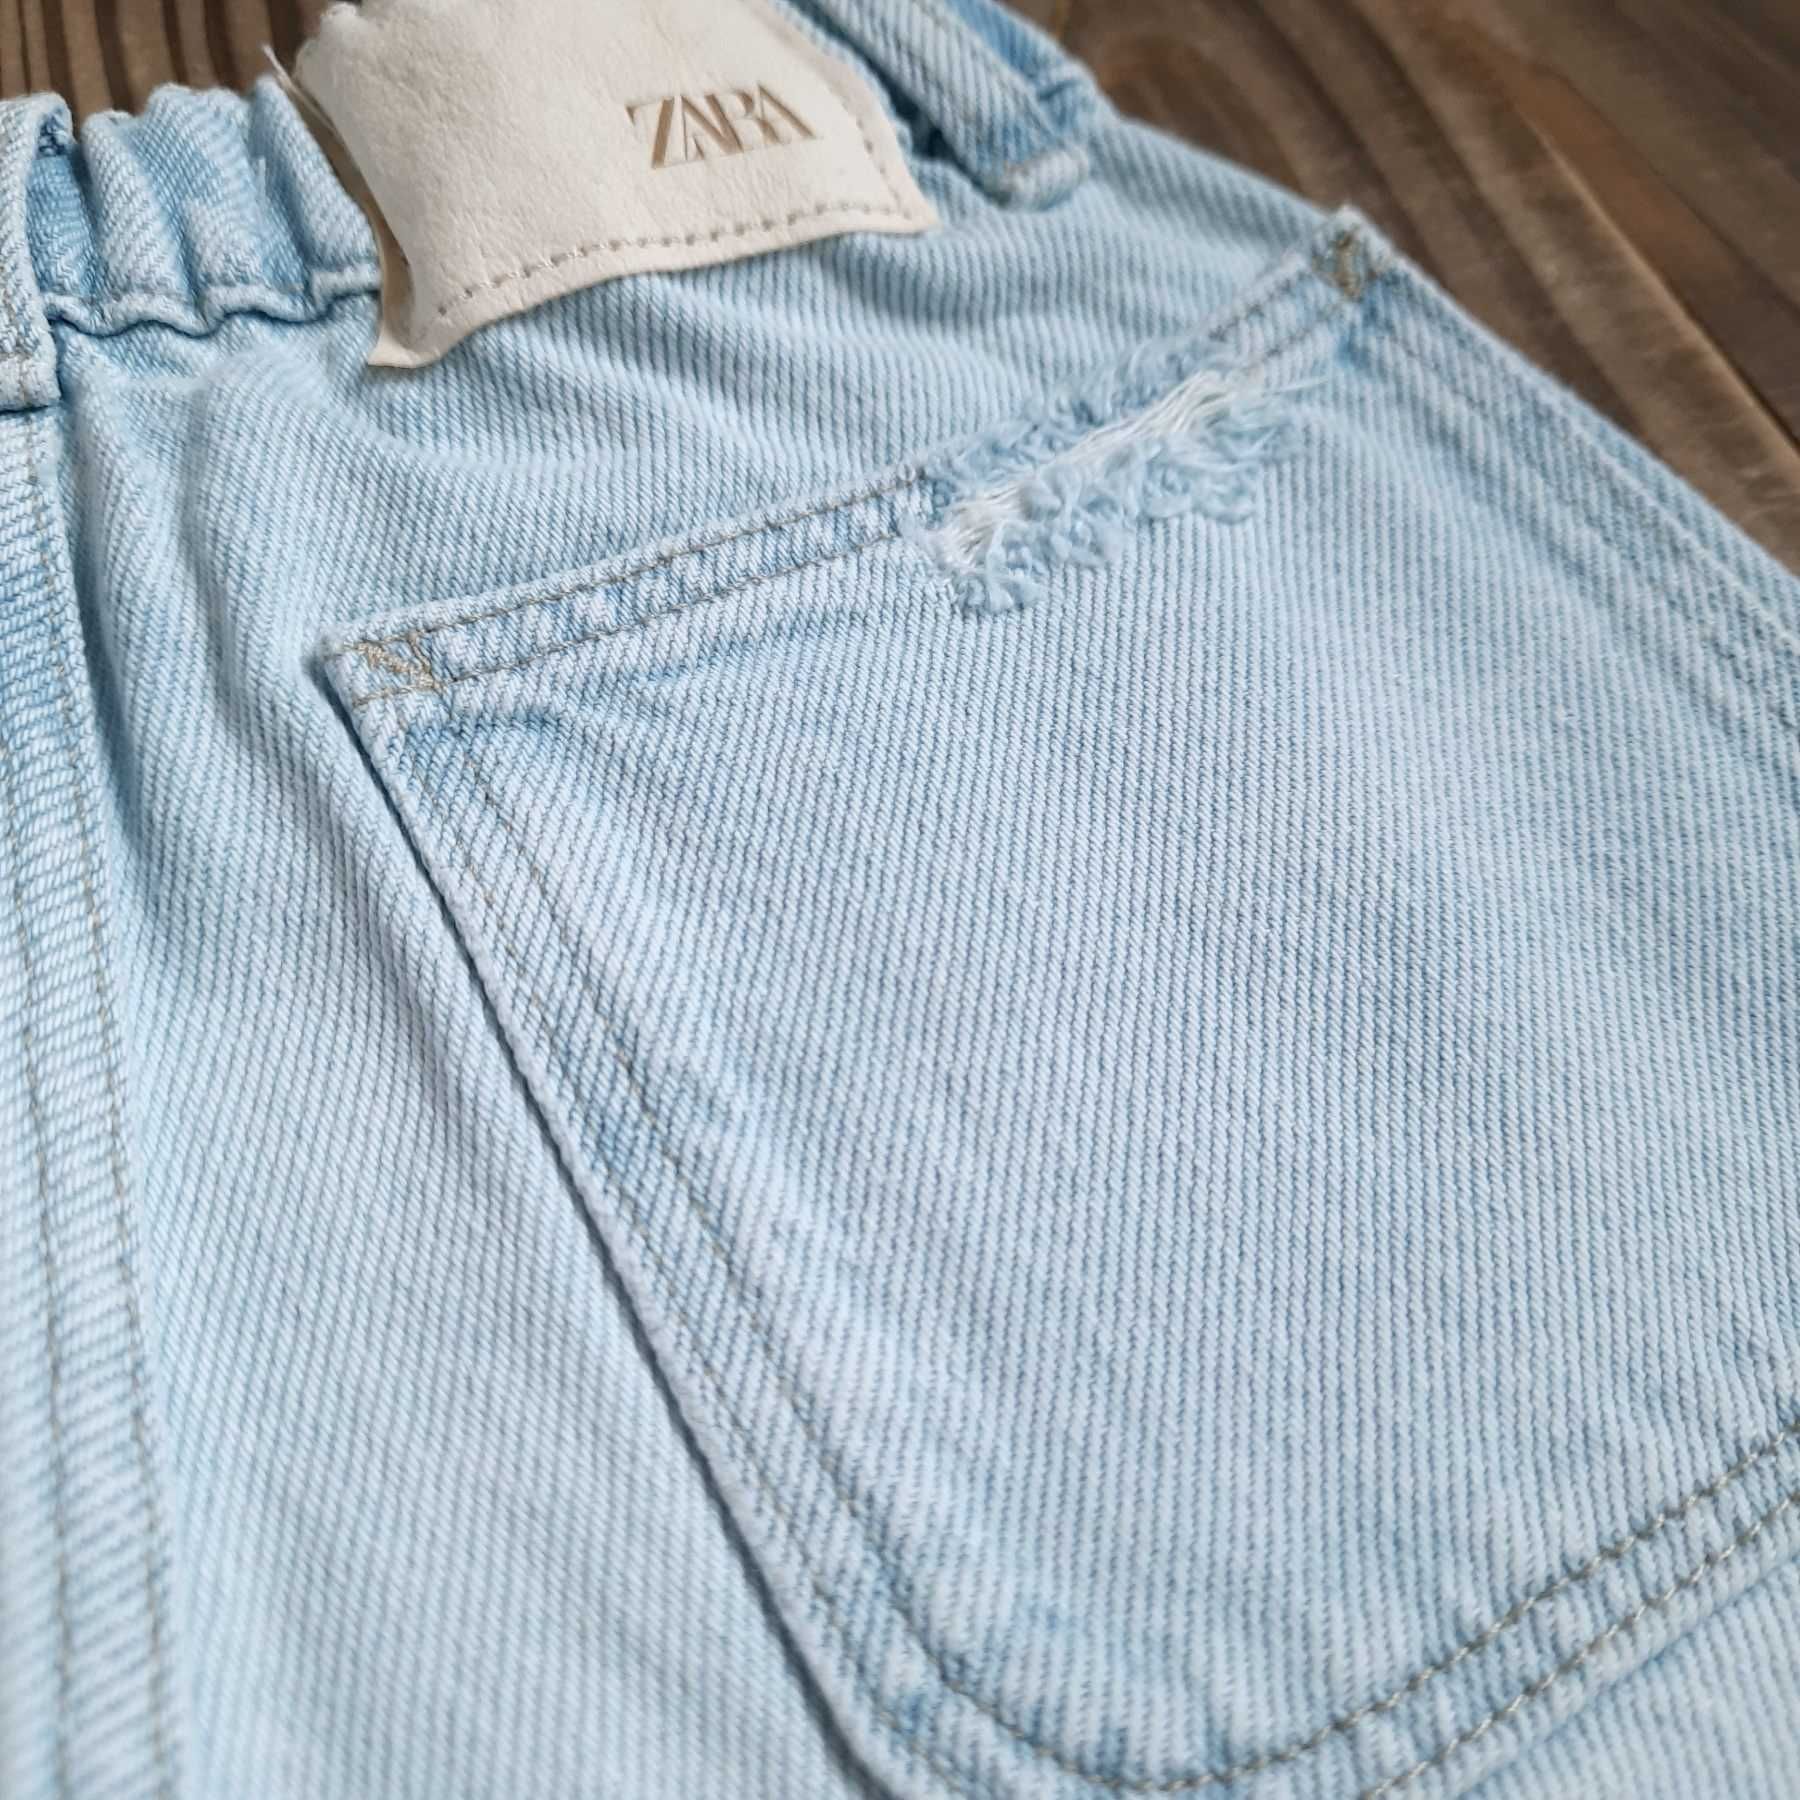 Нові джинсові шорти Zara та футболка H&M 4-6 років шорты 110 116